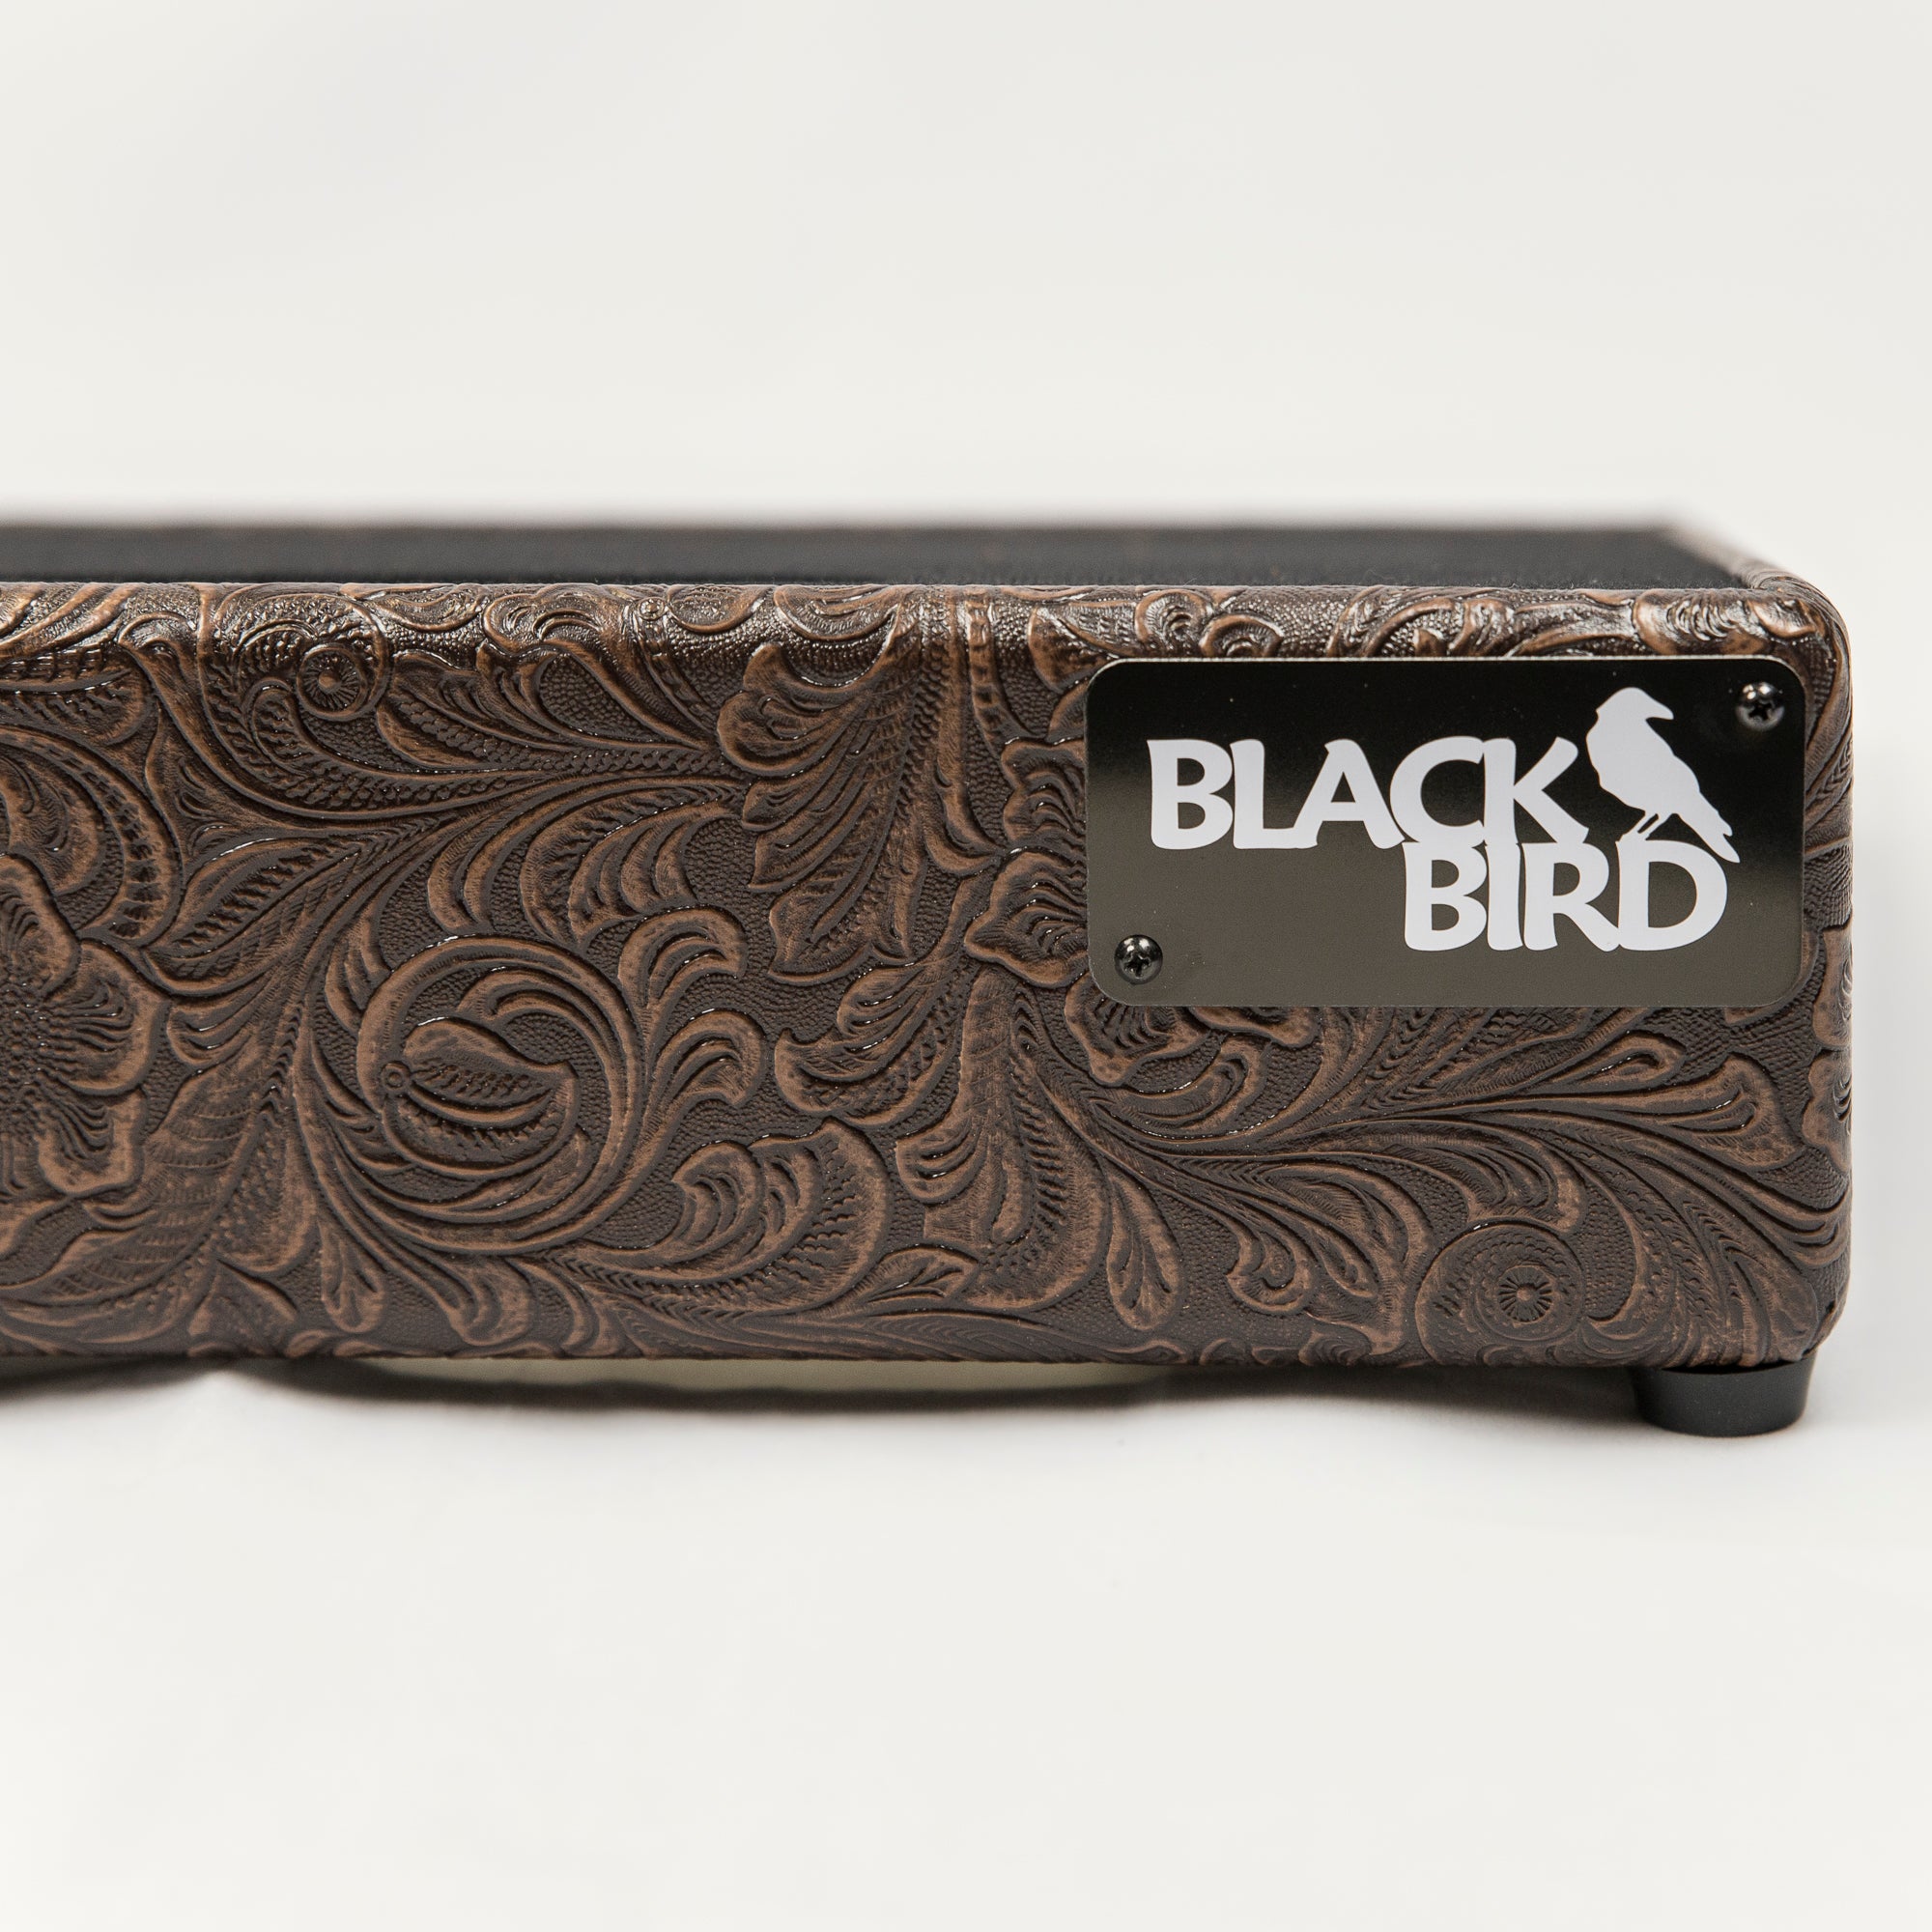 Blackbird 12 x 24 Western Tolex Pedalboard with ATA Case